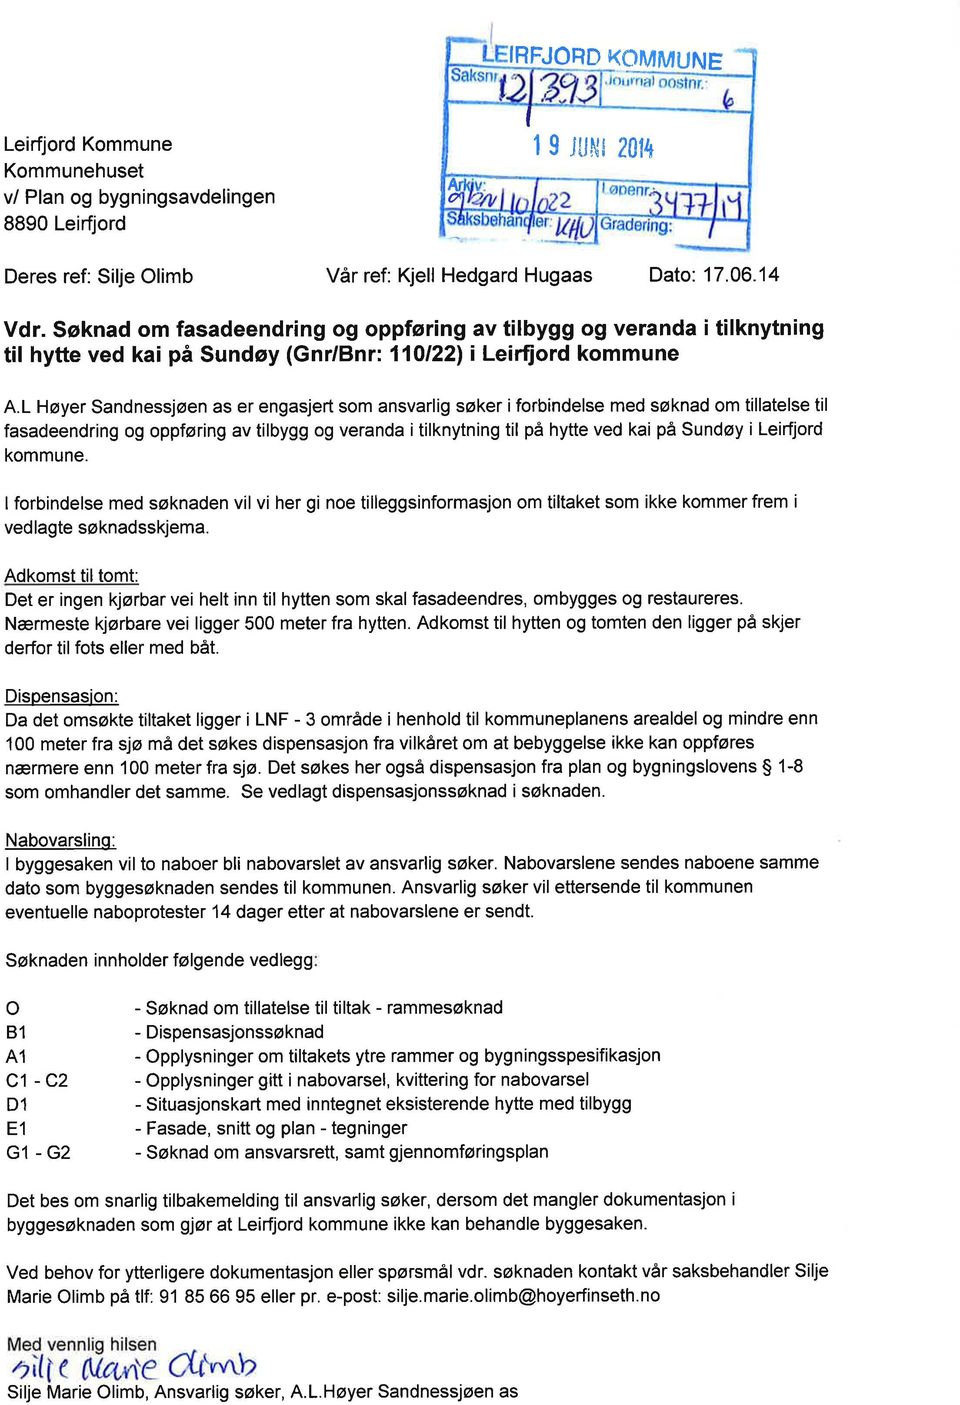 L Høyer Sandnessjøen as er engasjert som ansvarlig søker iforbindelse med søknad om tillatelse til fasadeendring og oppføring av tilbygg og veranda i tilknytning til på hytte ved kai på Sundøy i